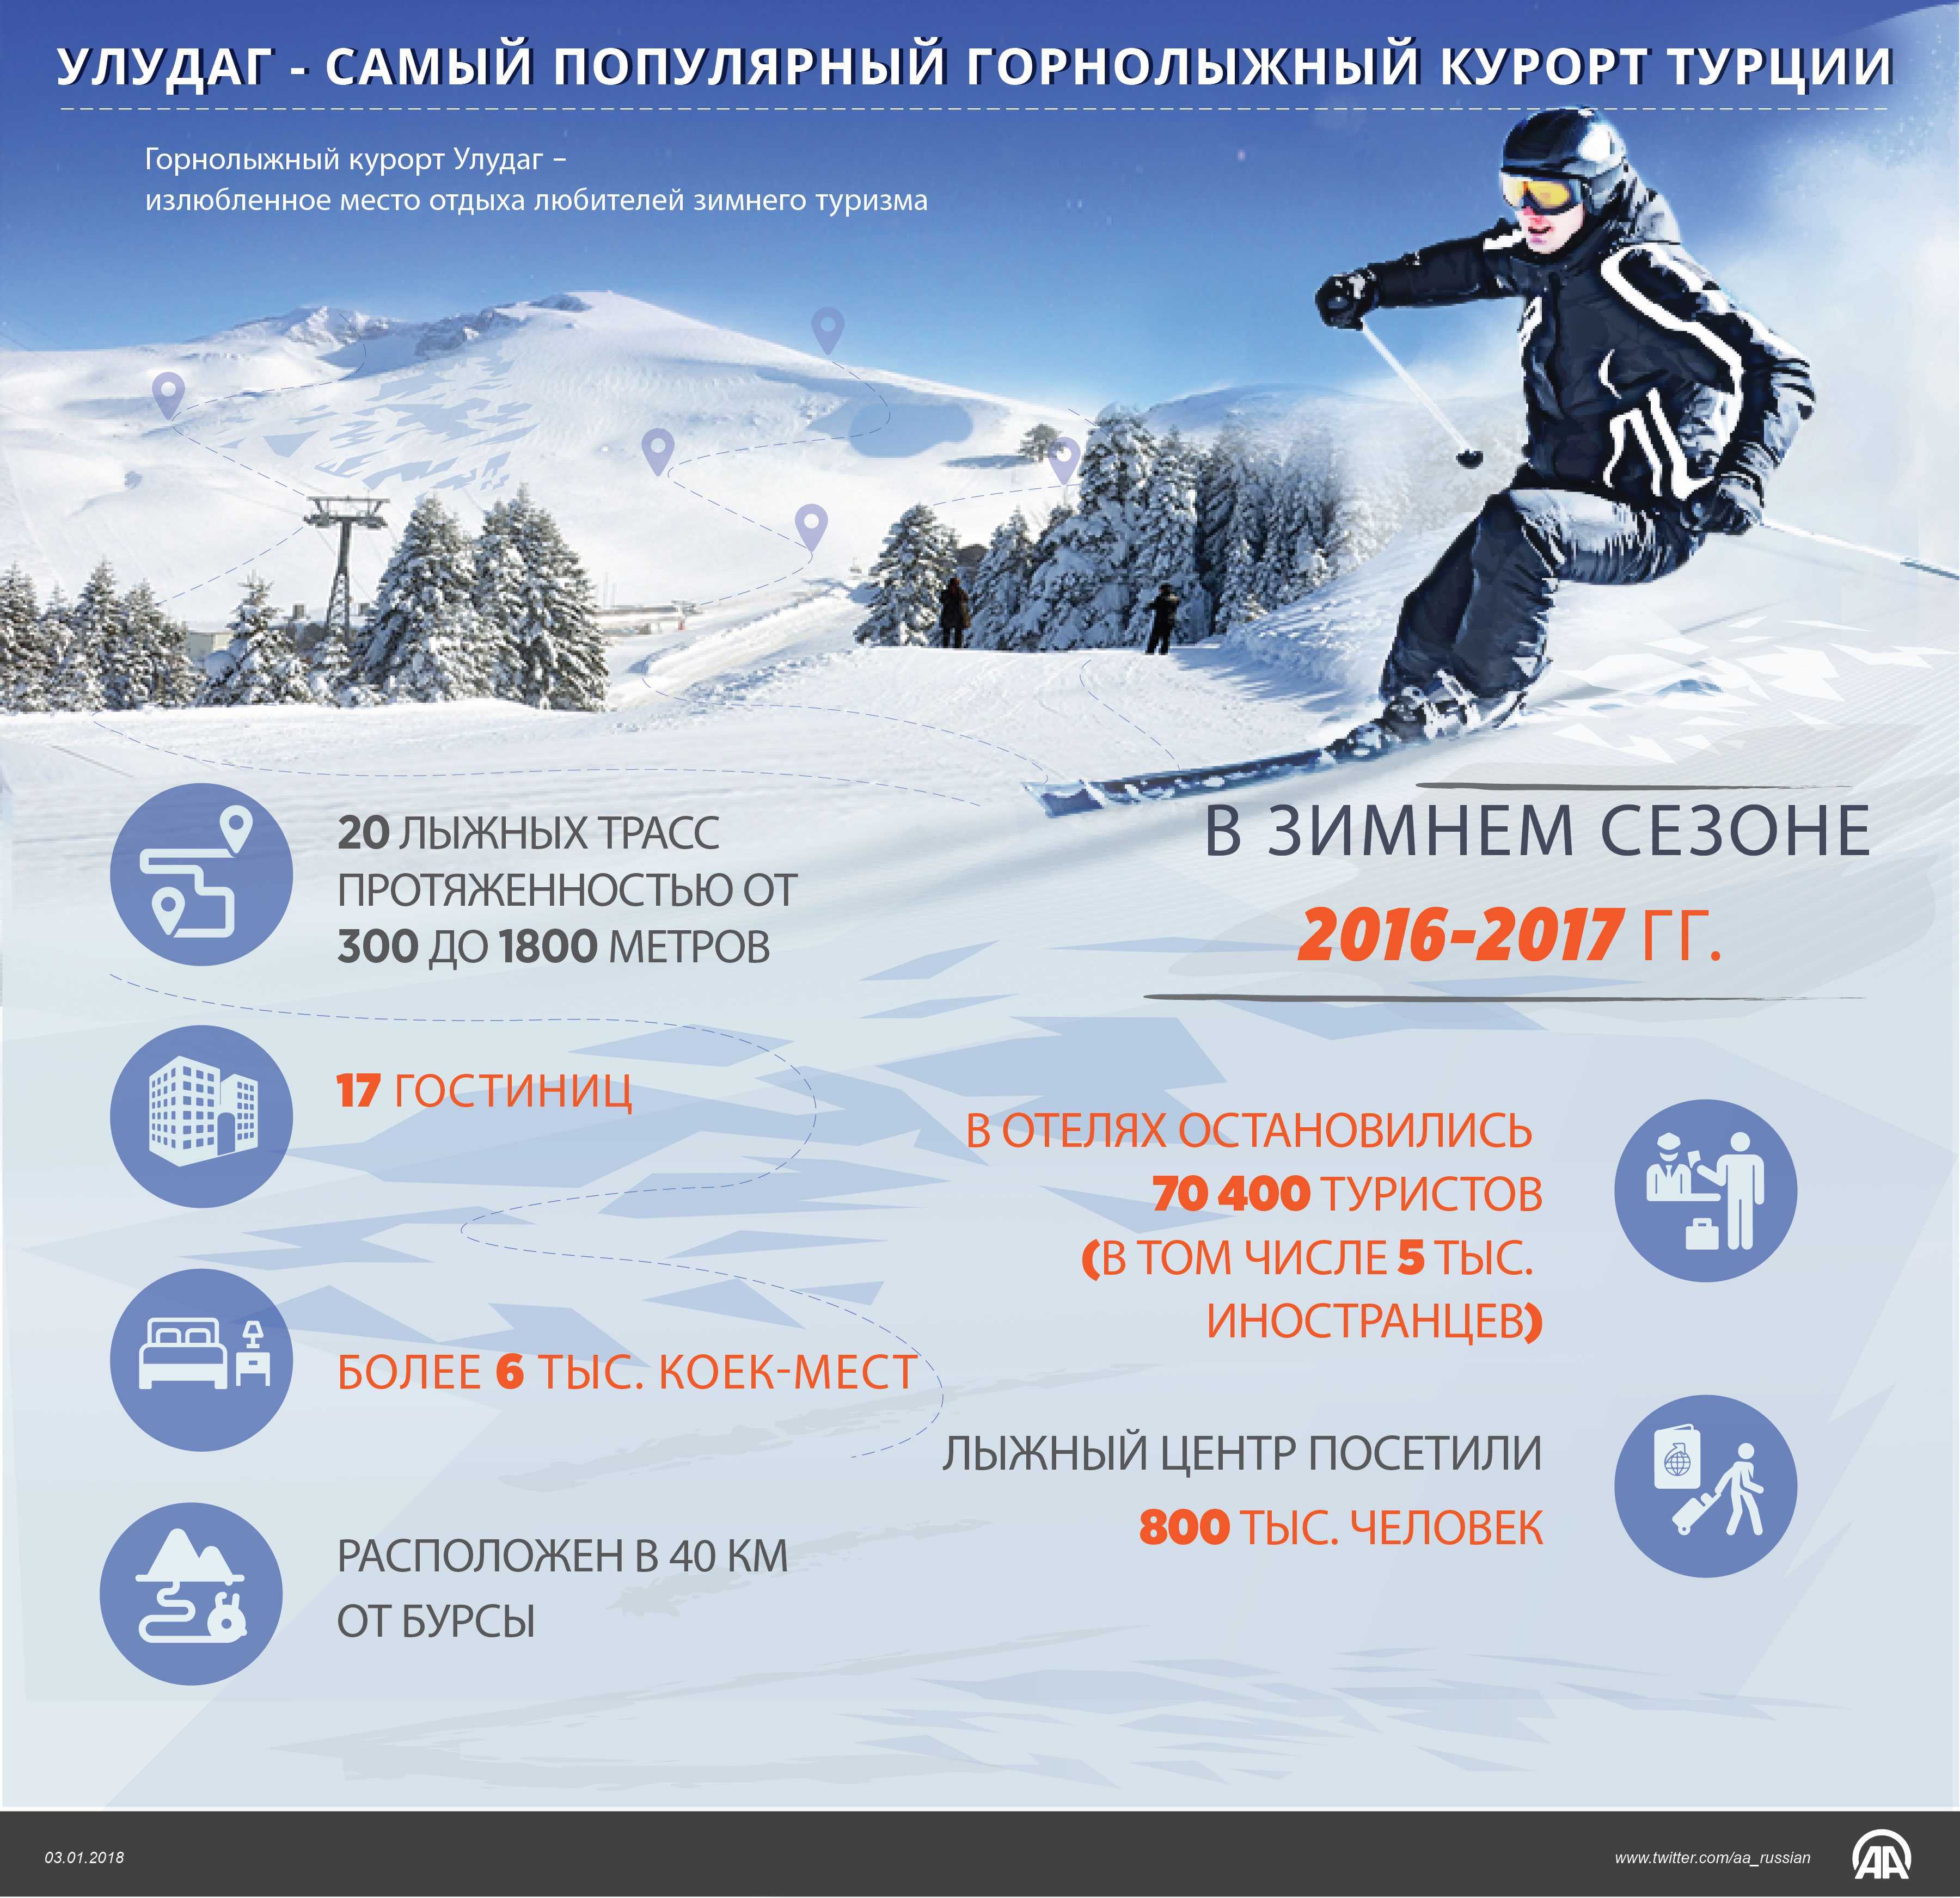 Улудаг - горнолыжный курорт турции - отзывы, фото и описание - 2023